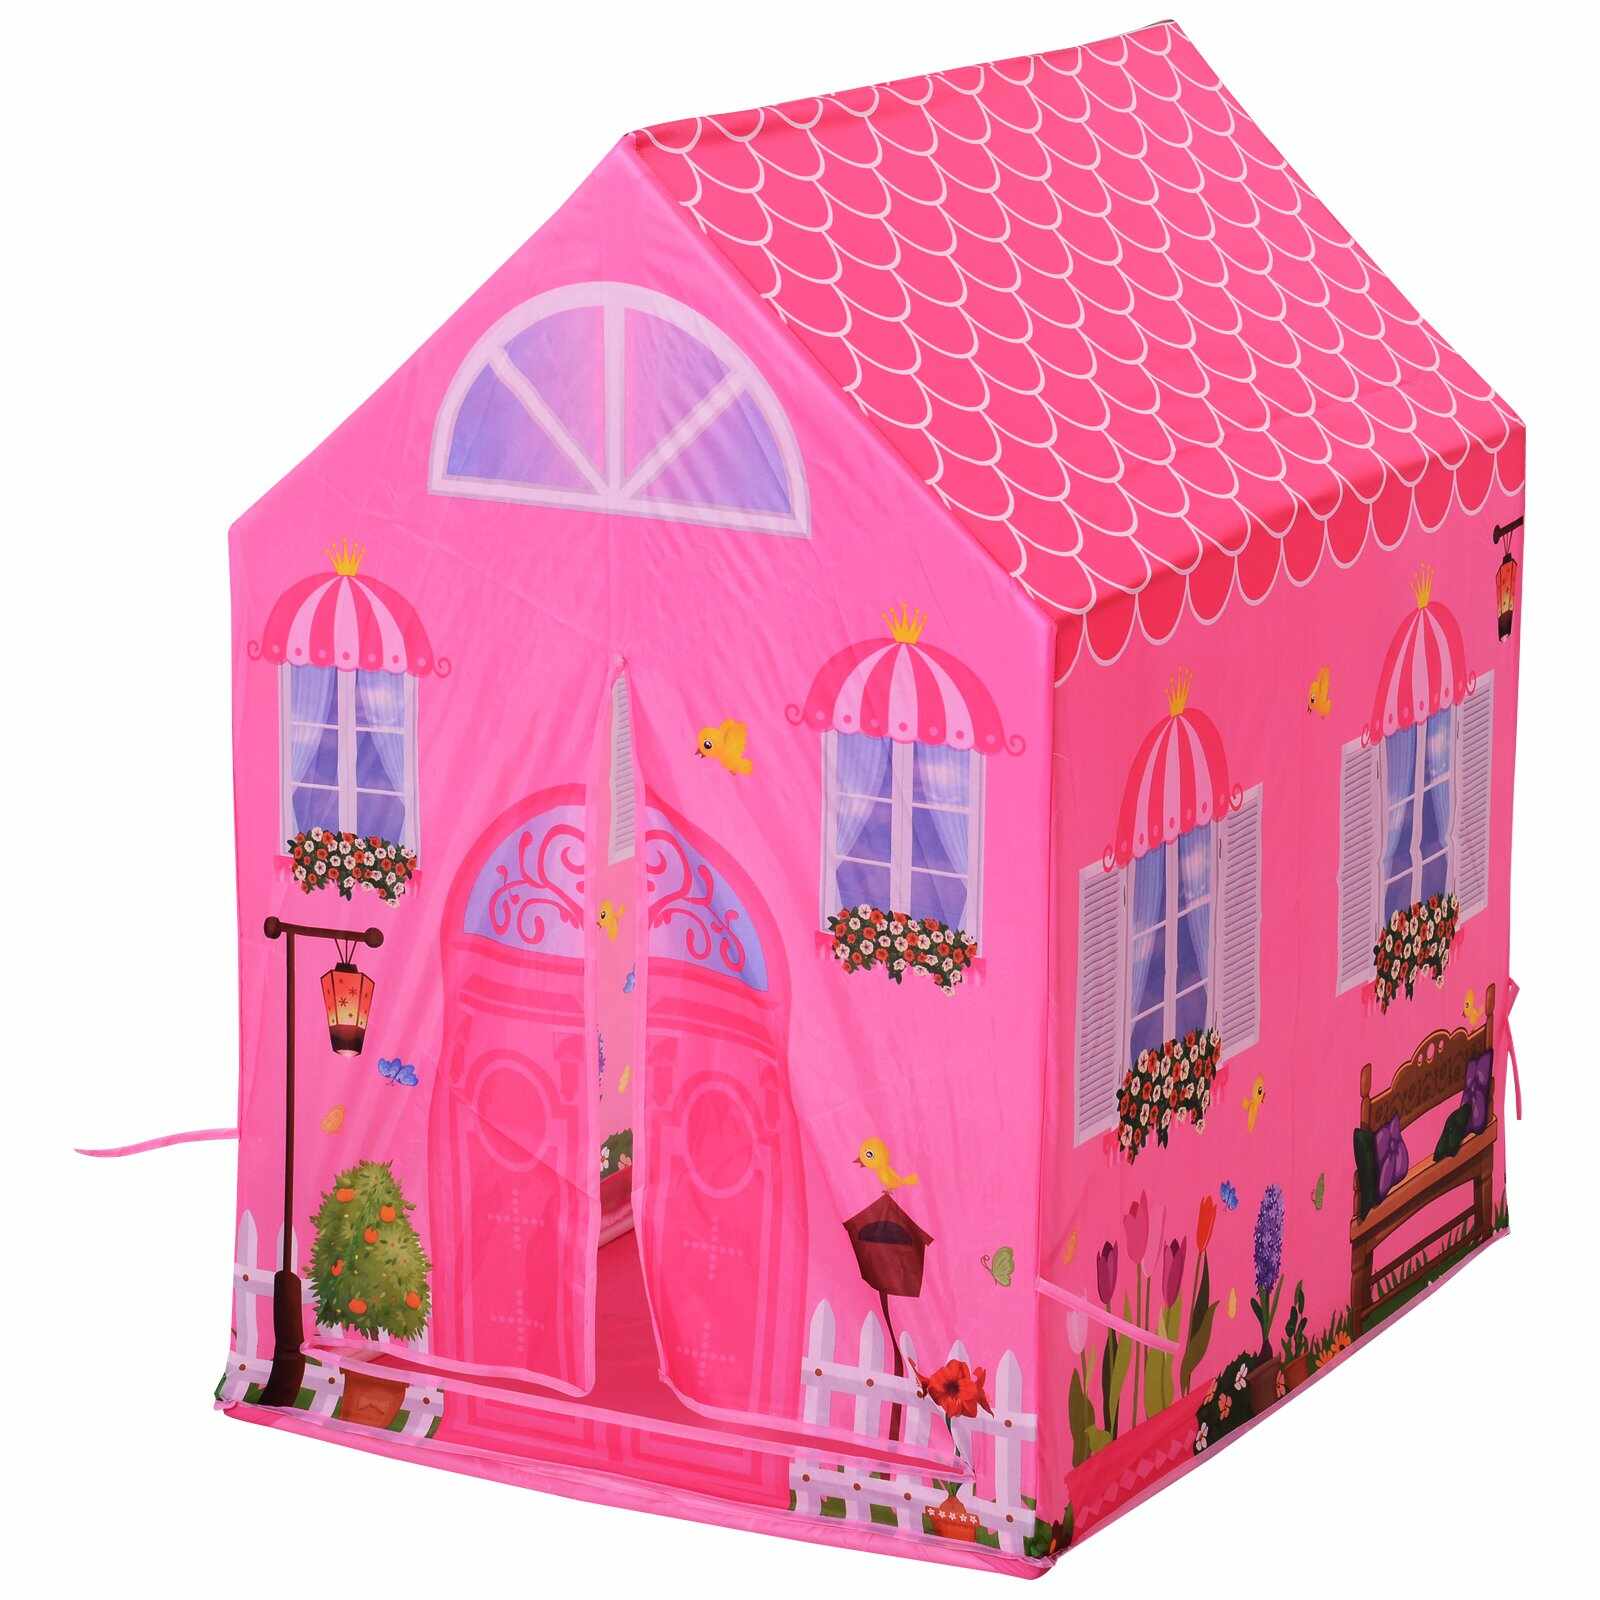 Homcom Cort Princess Play pentru Fete de peste 3 ani pentru Interior si Exterior Roz 93 x 69 x 103 cm